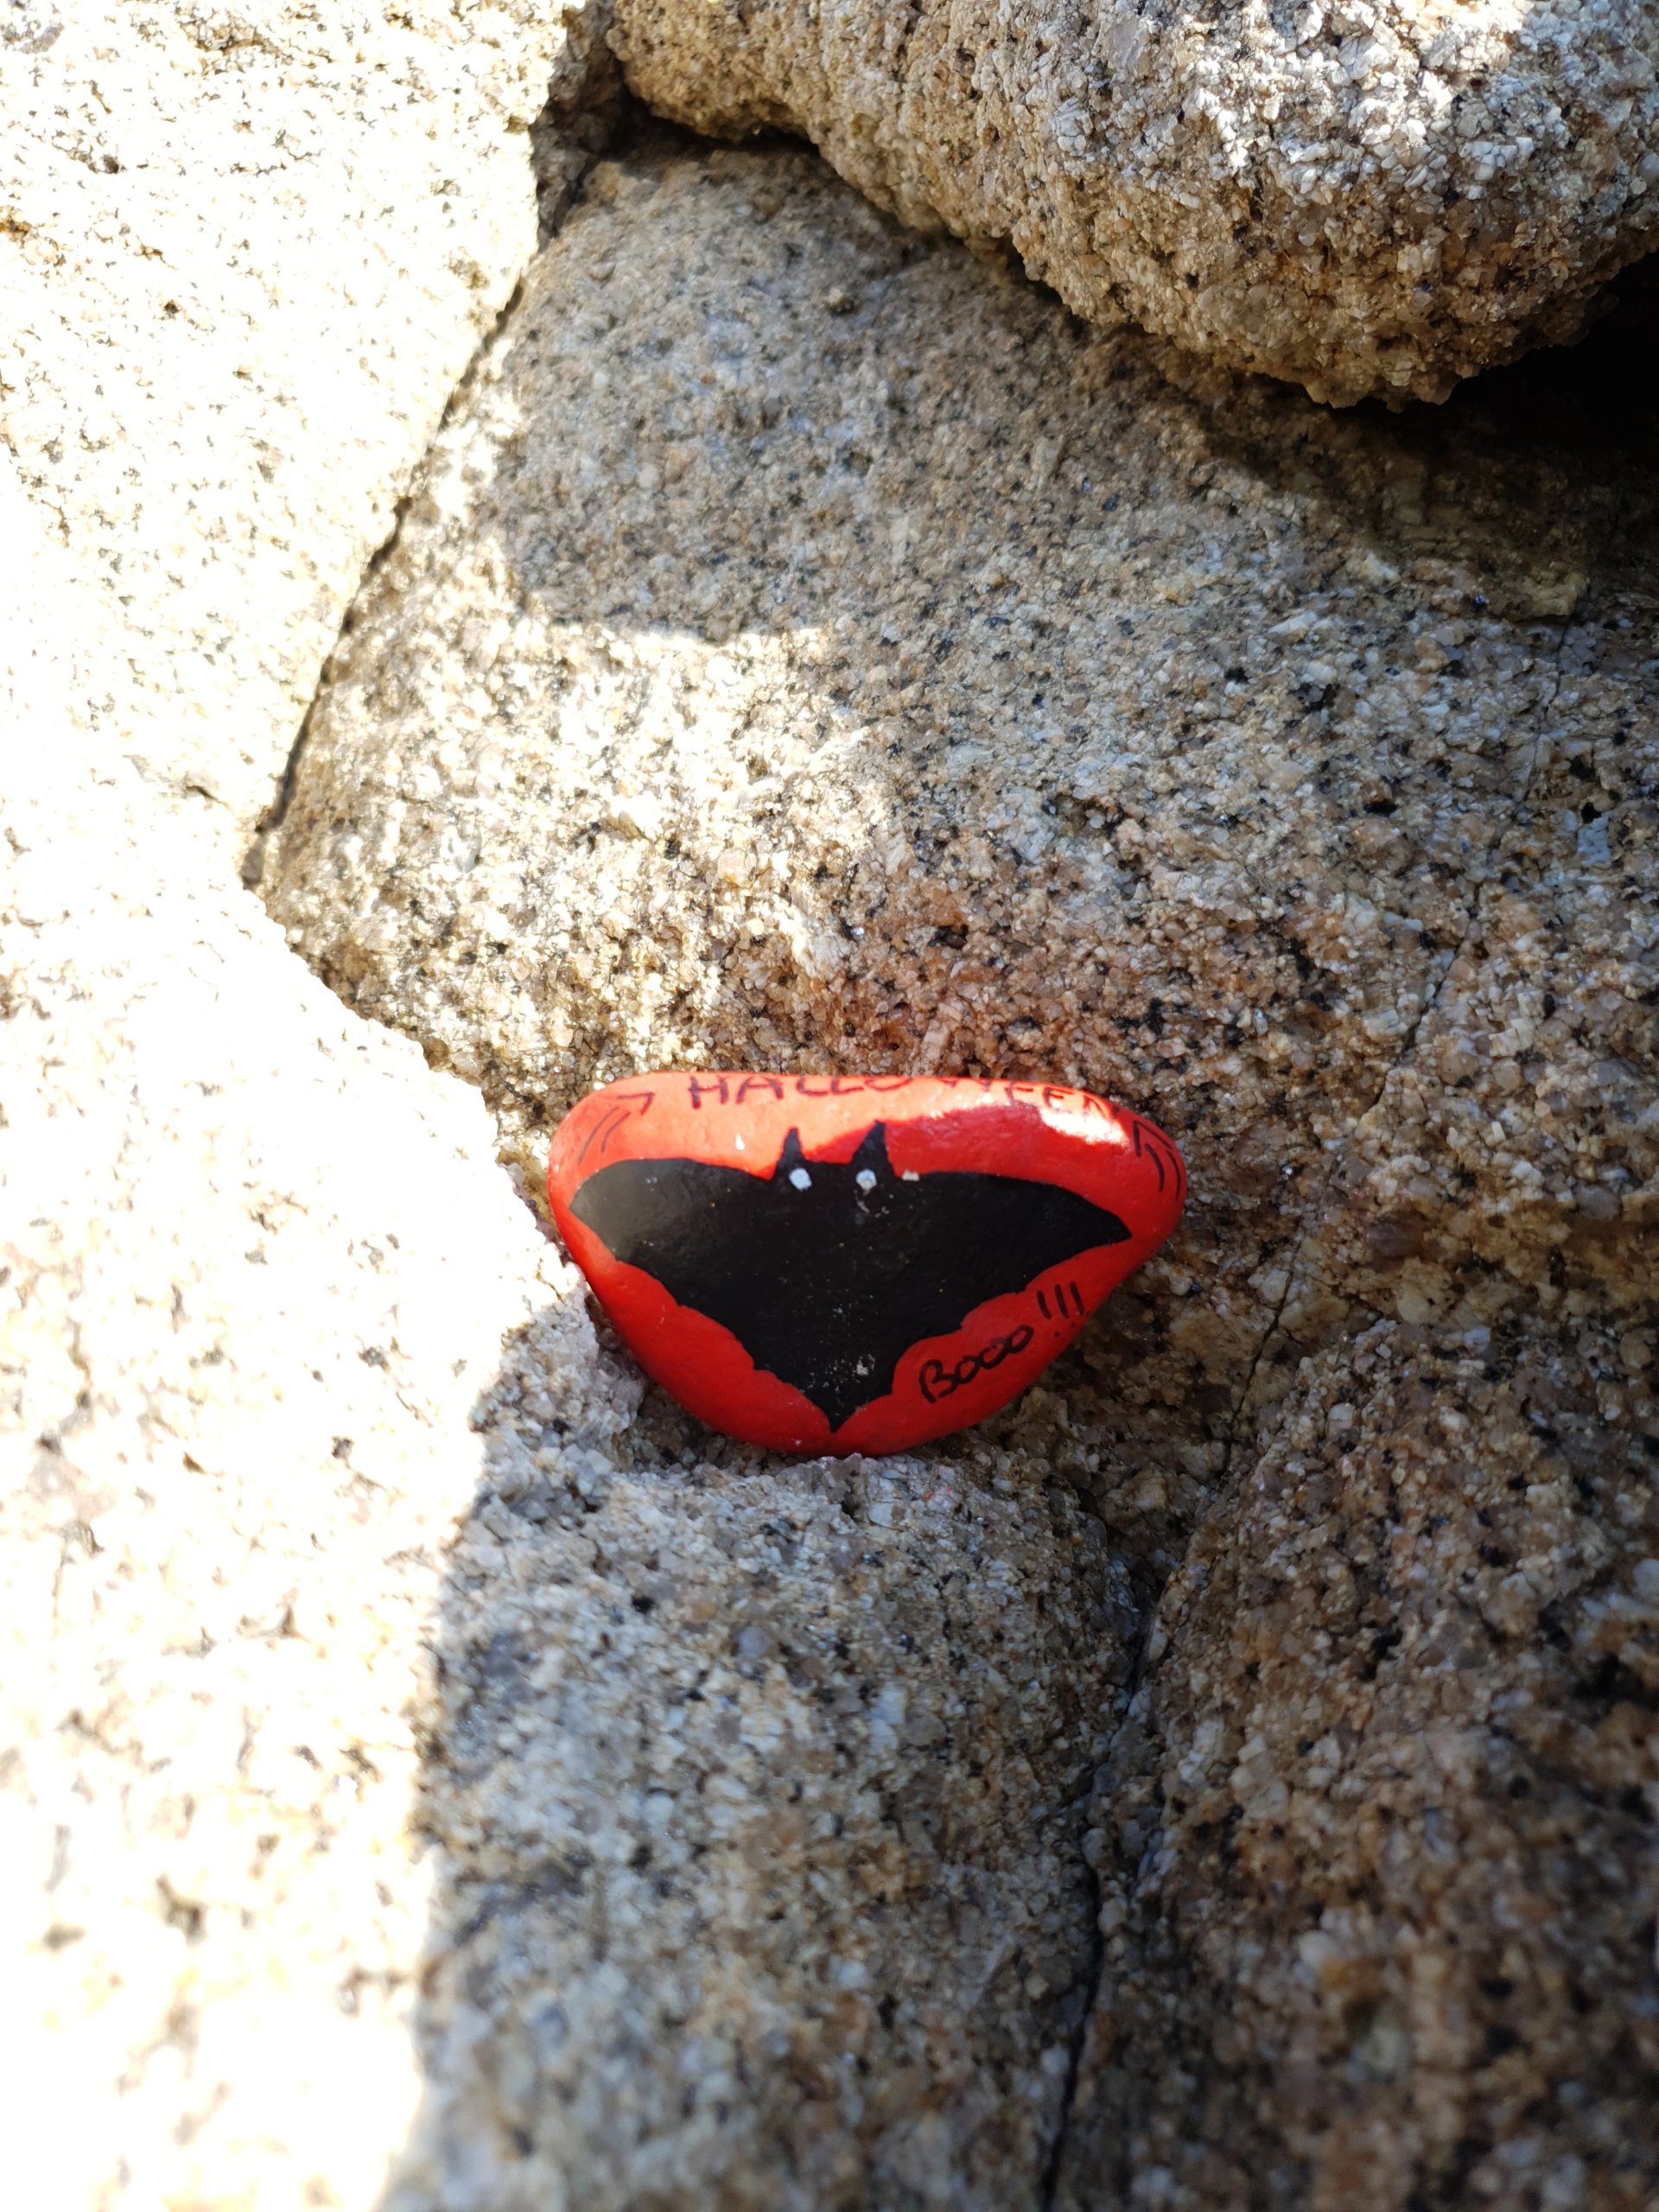 Le galet voyageur "Super Chauve-souris Batman" est déposé dans le creux d'un rocher face à la Méditerranée.